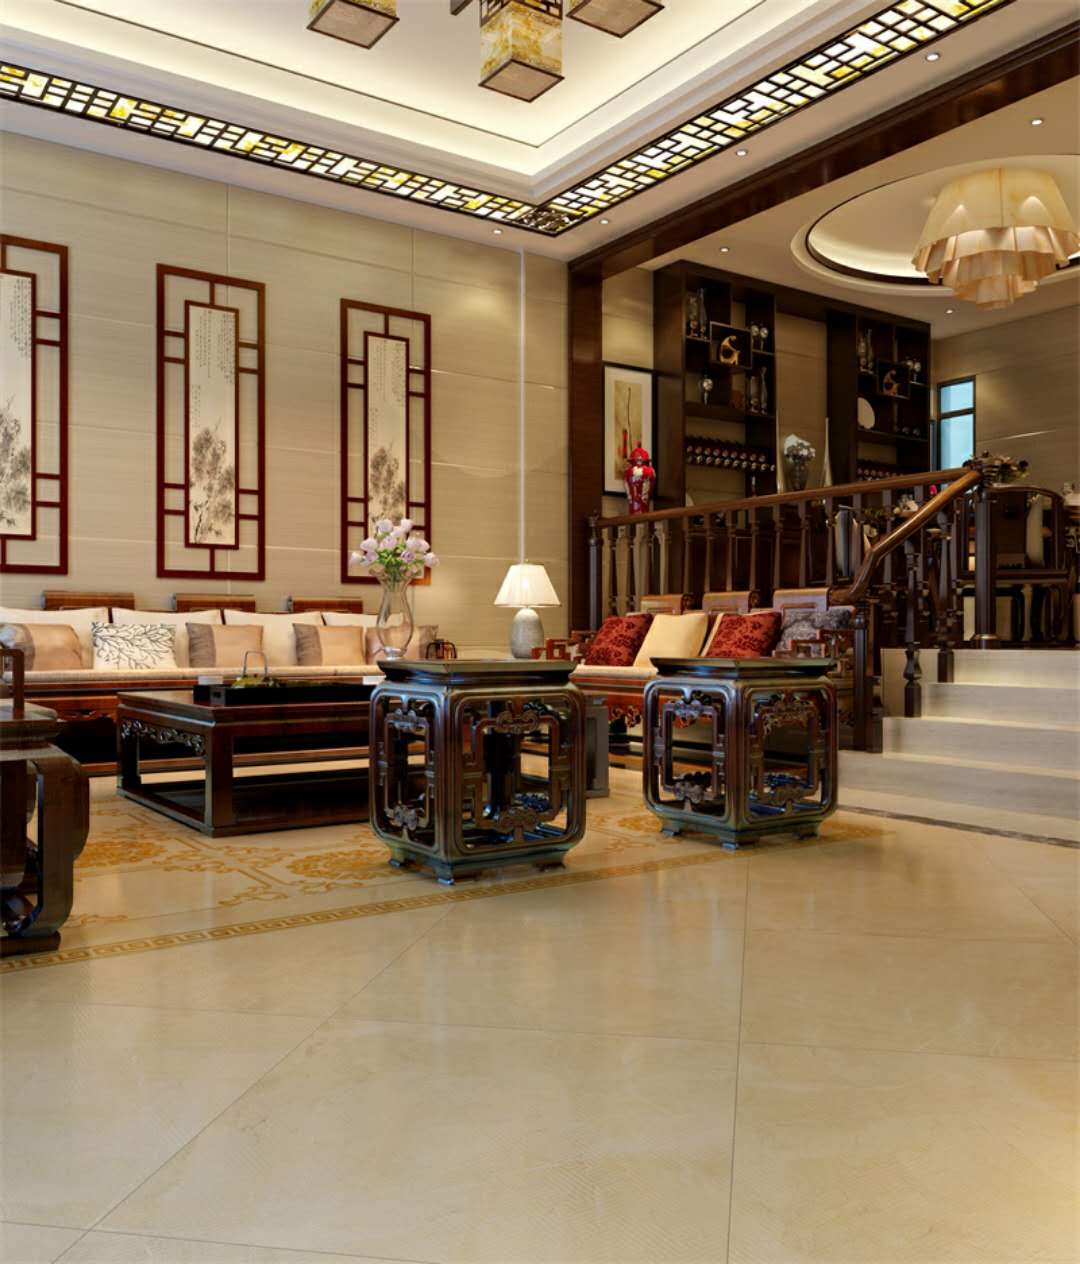 中国装饰网四川装饰材料瓷砖品牌马可波罗瓷砖 央视聚焦马可波罗瓷砖国际化战略